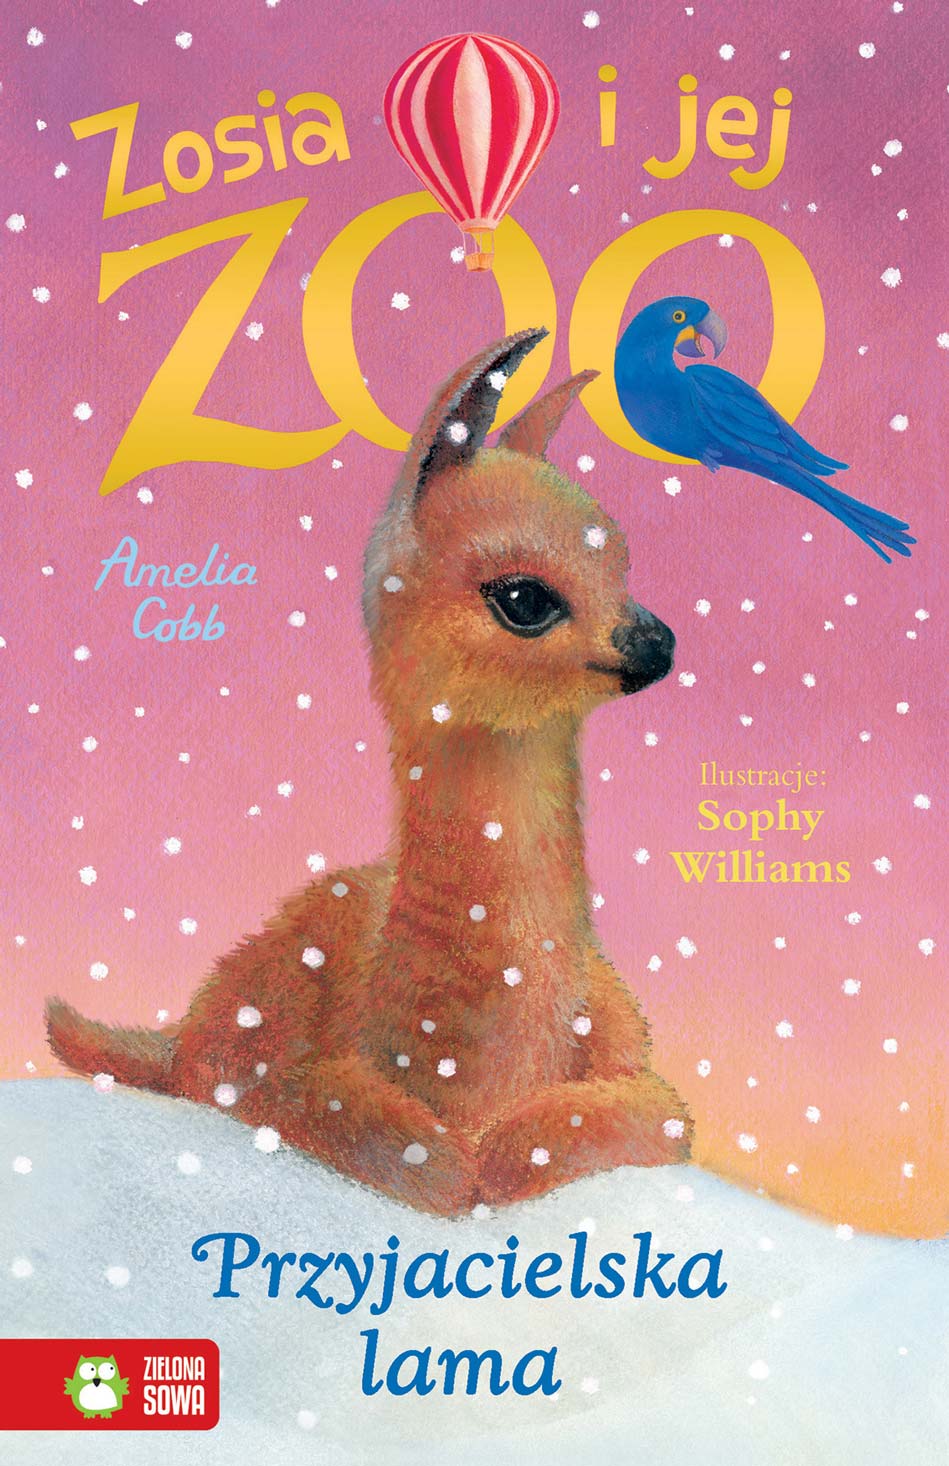 Kniha Przyjacielska lama. Zosia i jej zoo Amelia Cobb